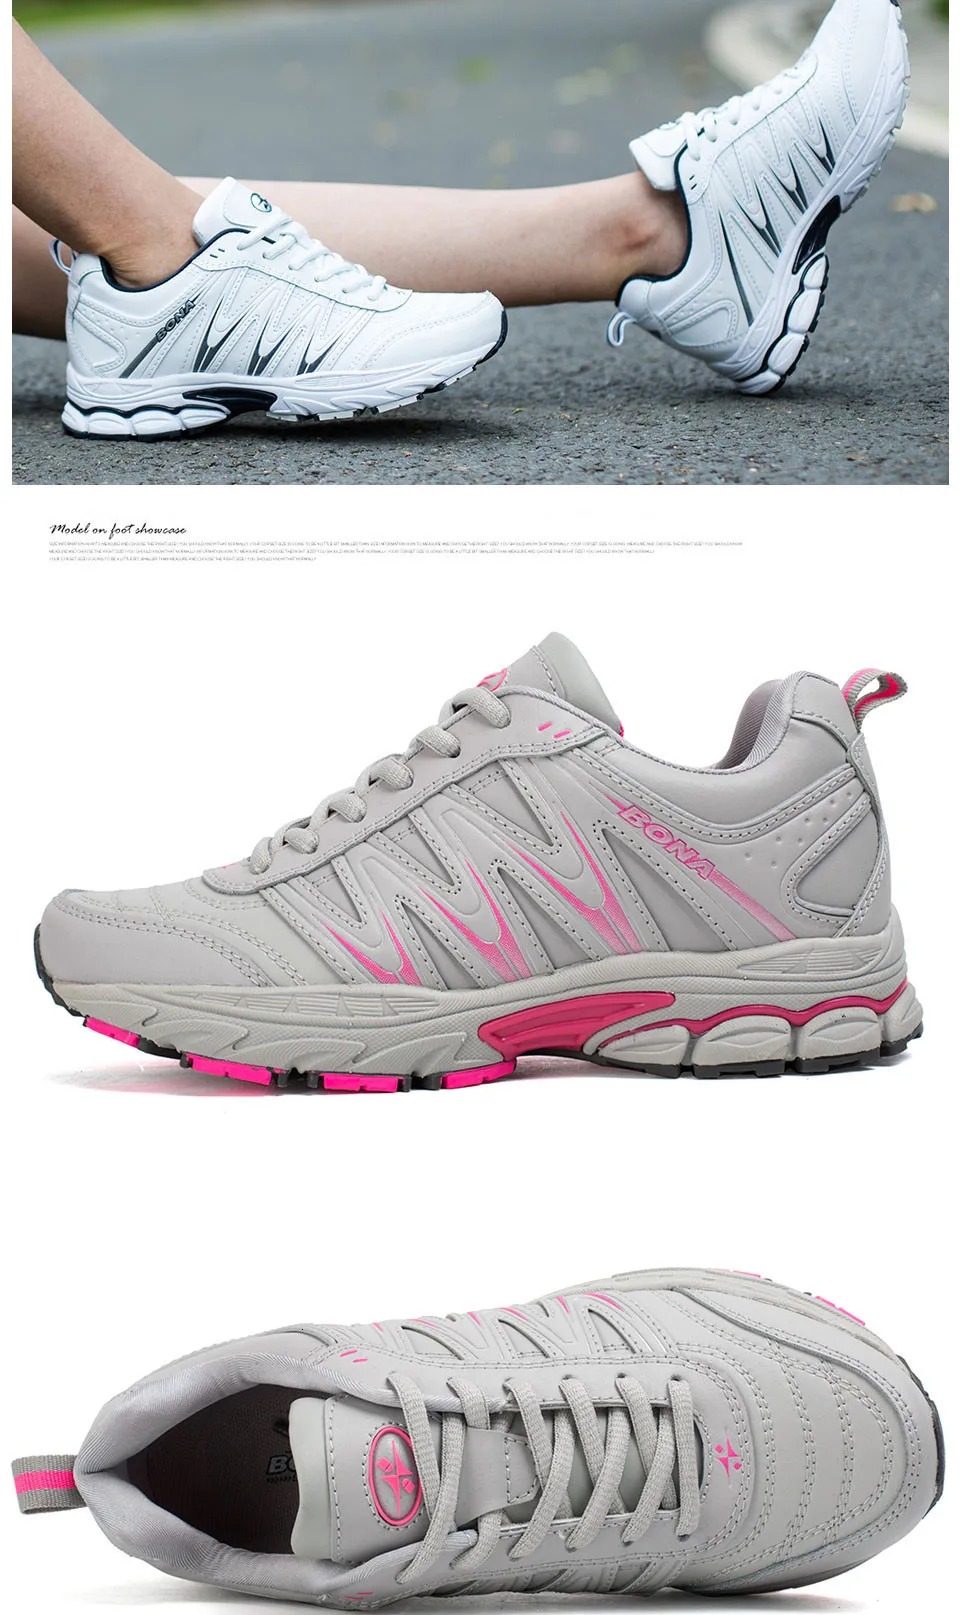 BONA/Новинка; популярный стиль; Zapatos de mujer; женская прогулочная обувь; спортивная обувь; Уличная обувь для бега; спортивная обувь; удобные кроссовки для женщин